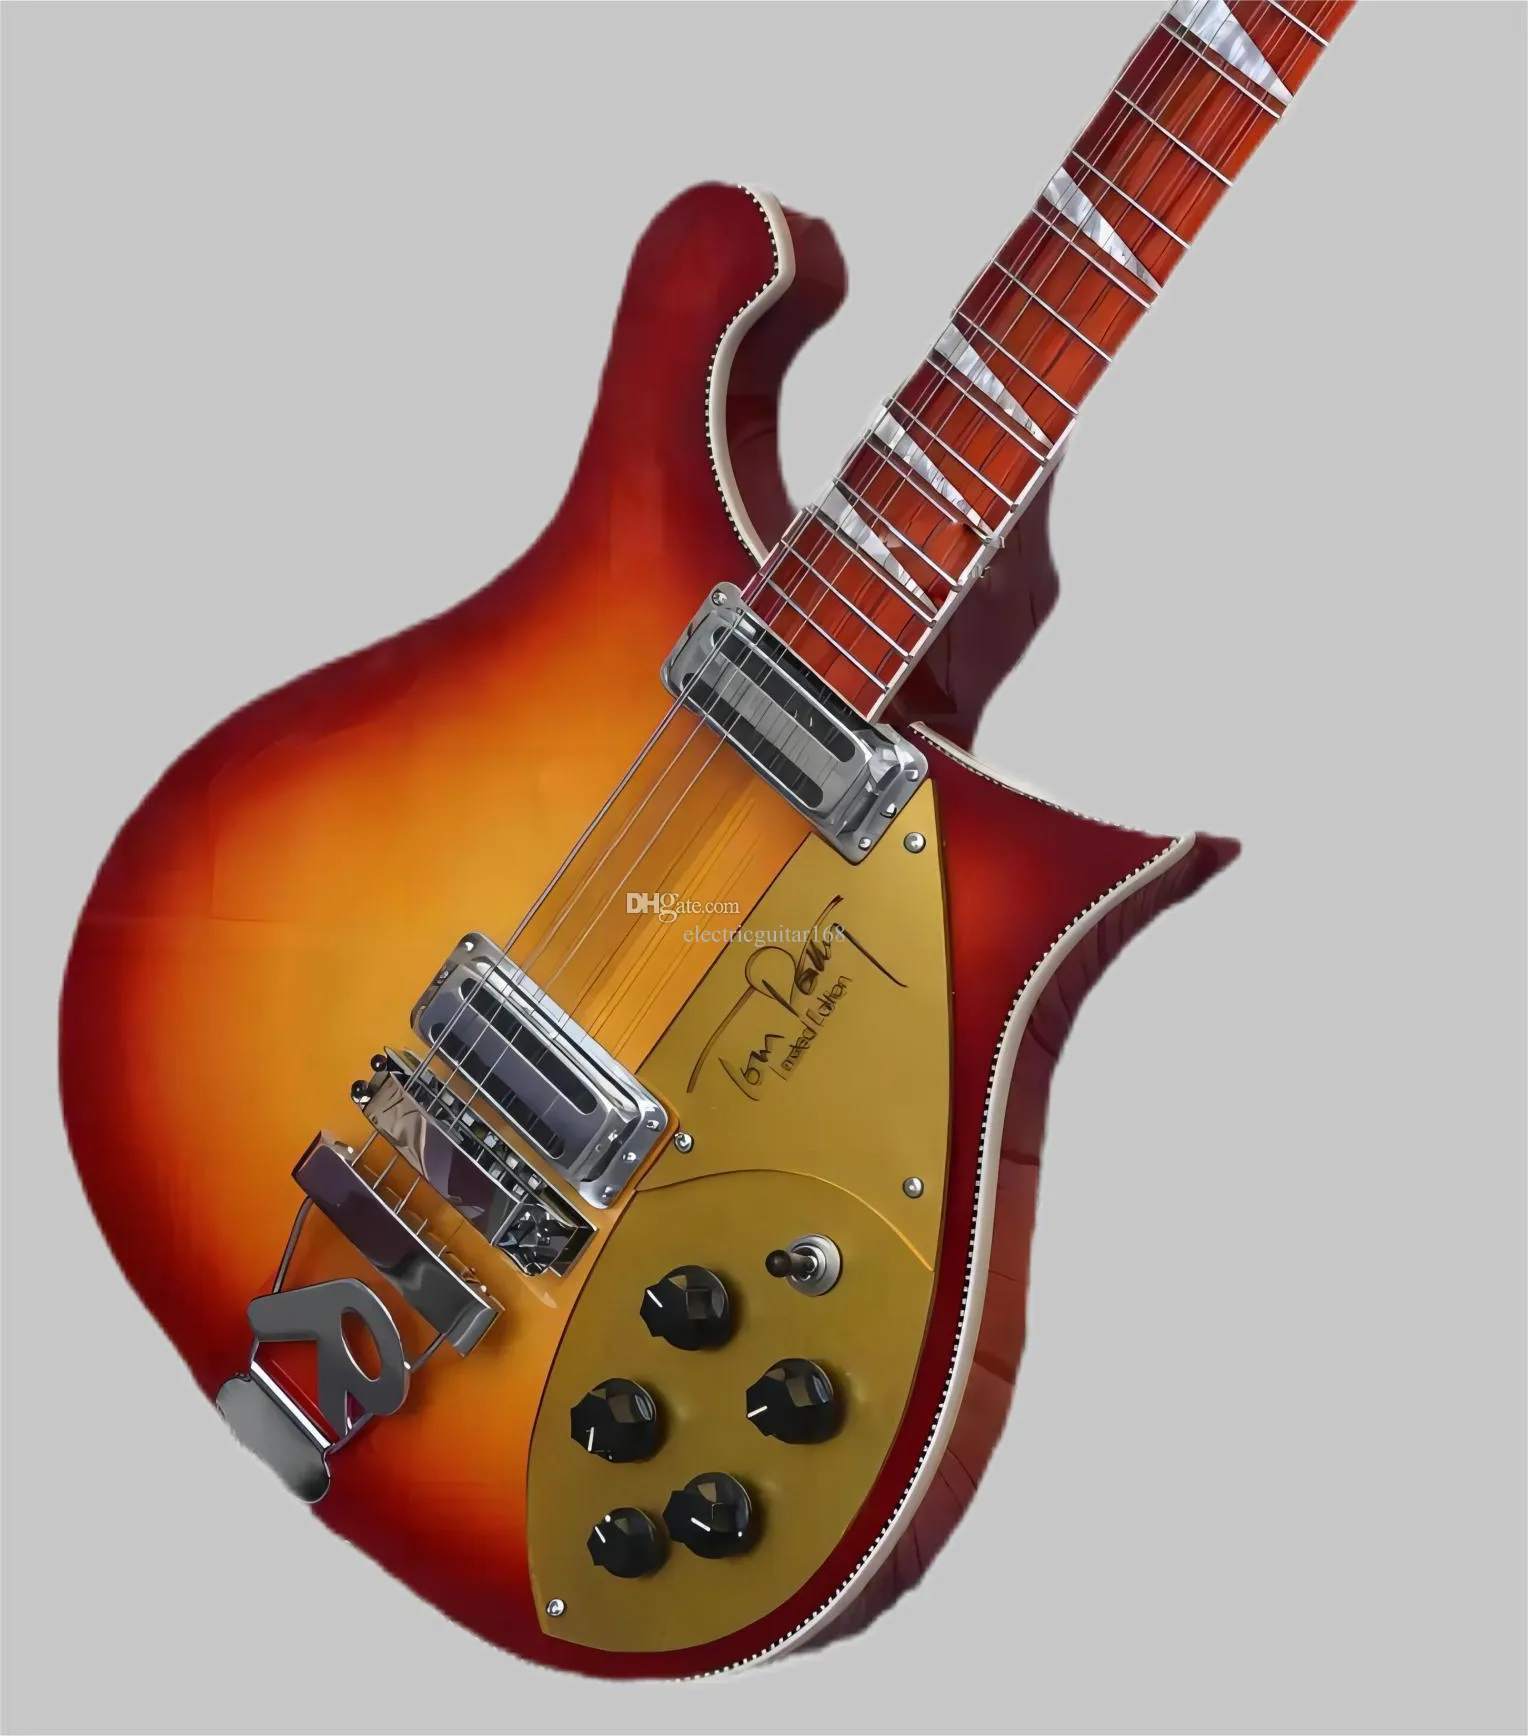 Venda quente de boa qualidade guitarra elétrica de alta qualidade 660 guitarra elétrica 12 cordas cereja vermelho r cordão jacarandá